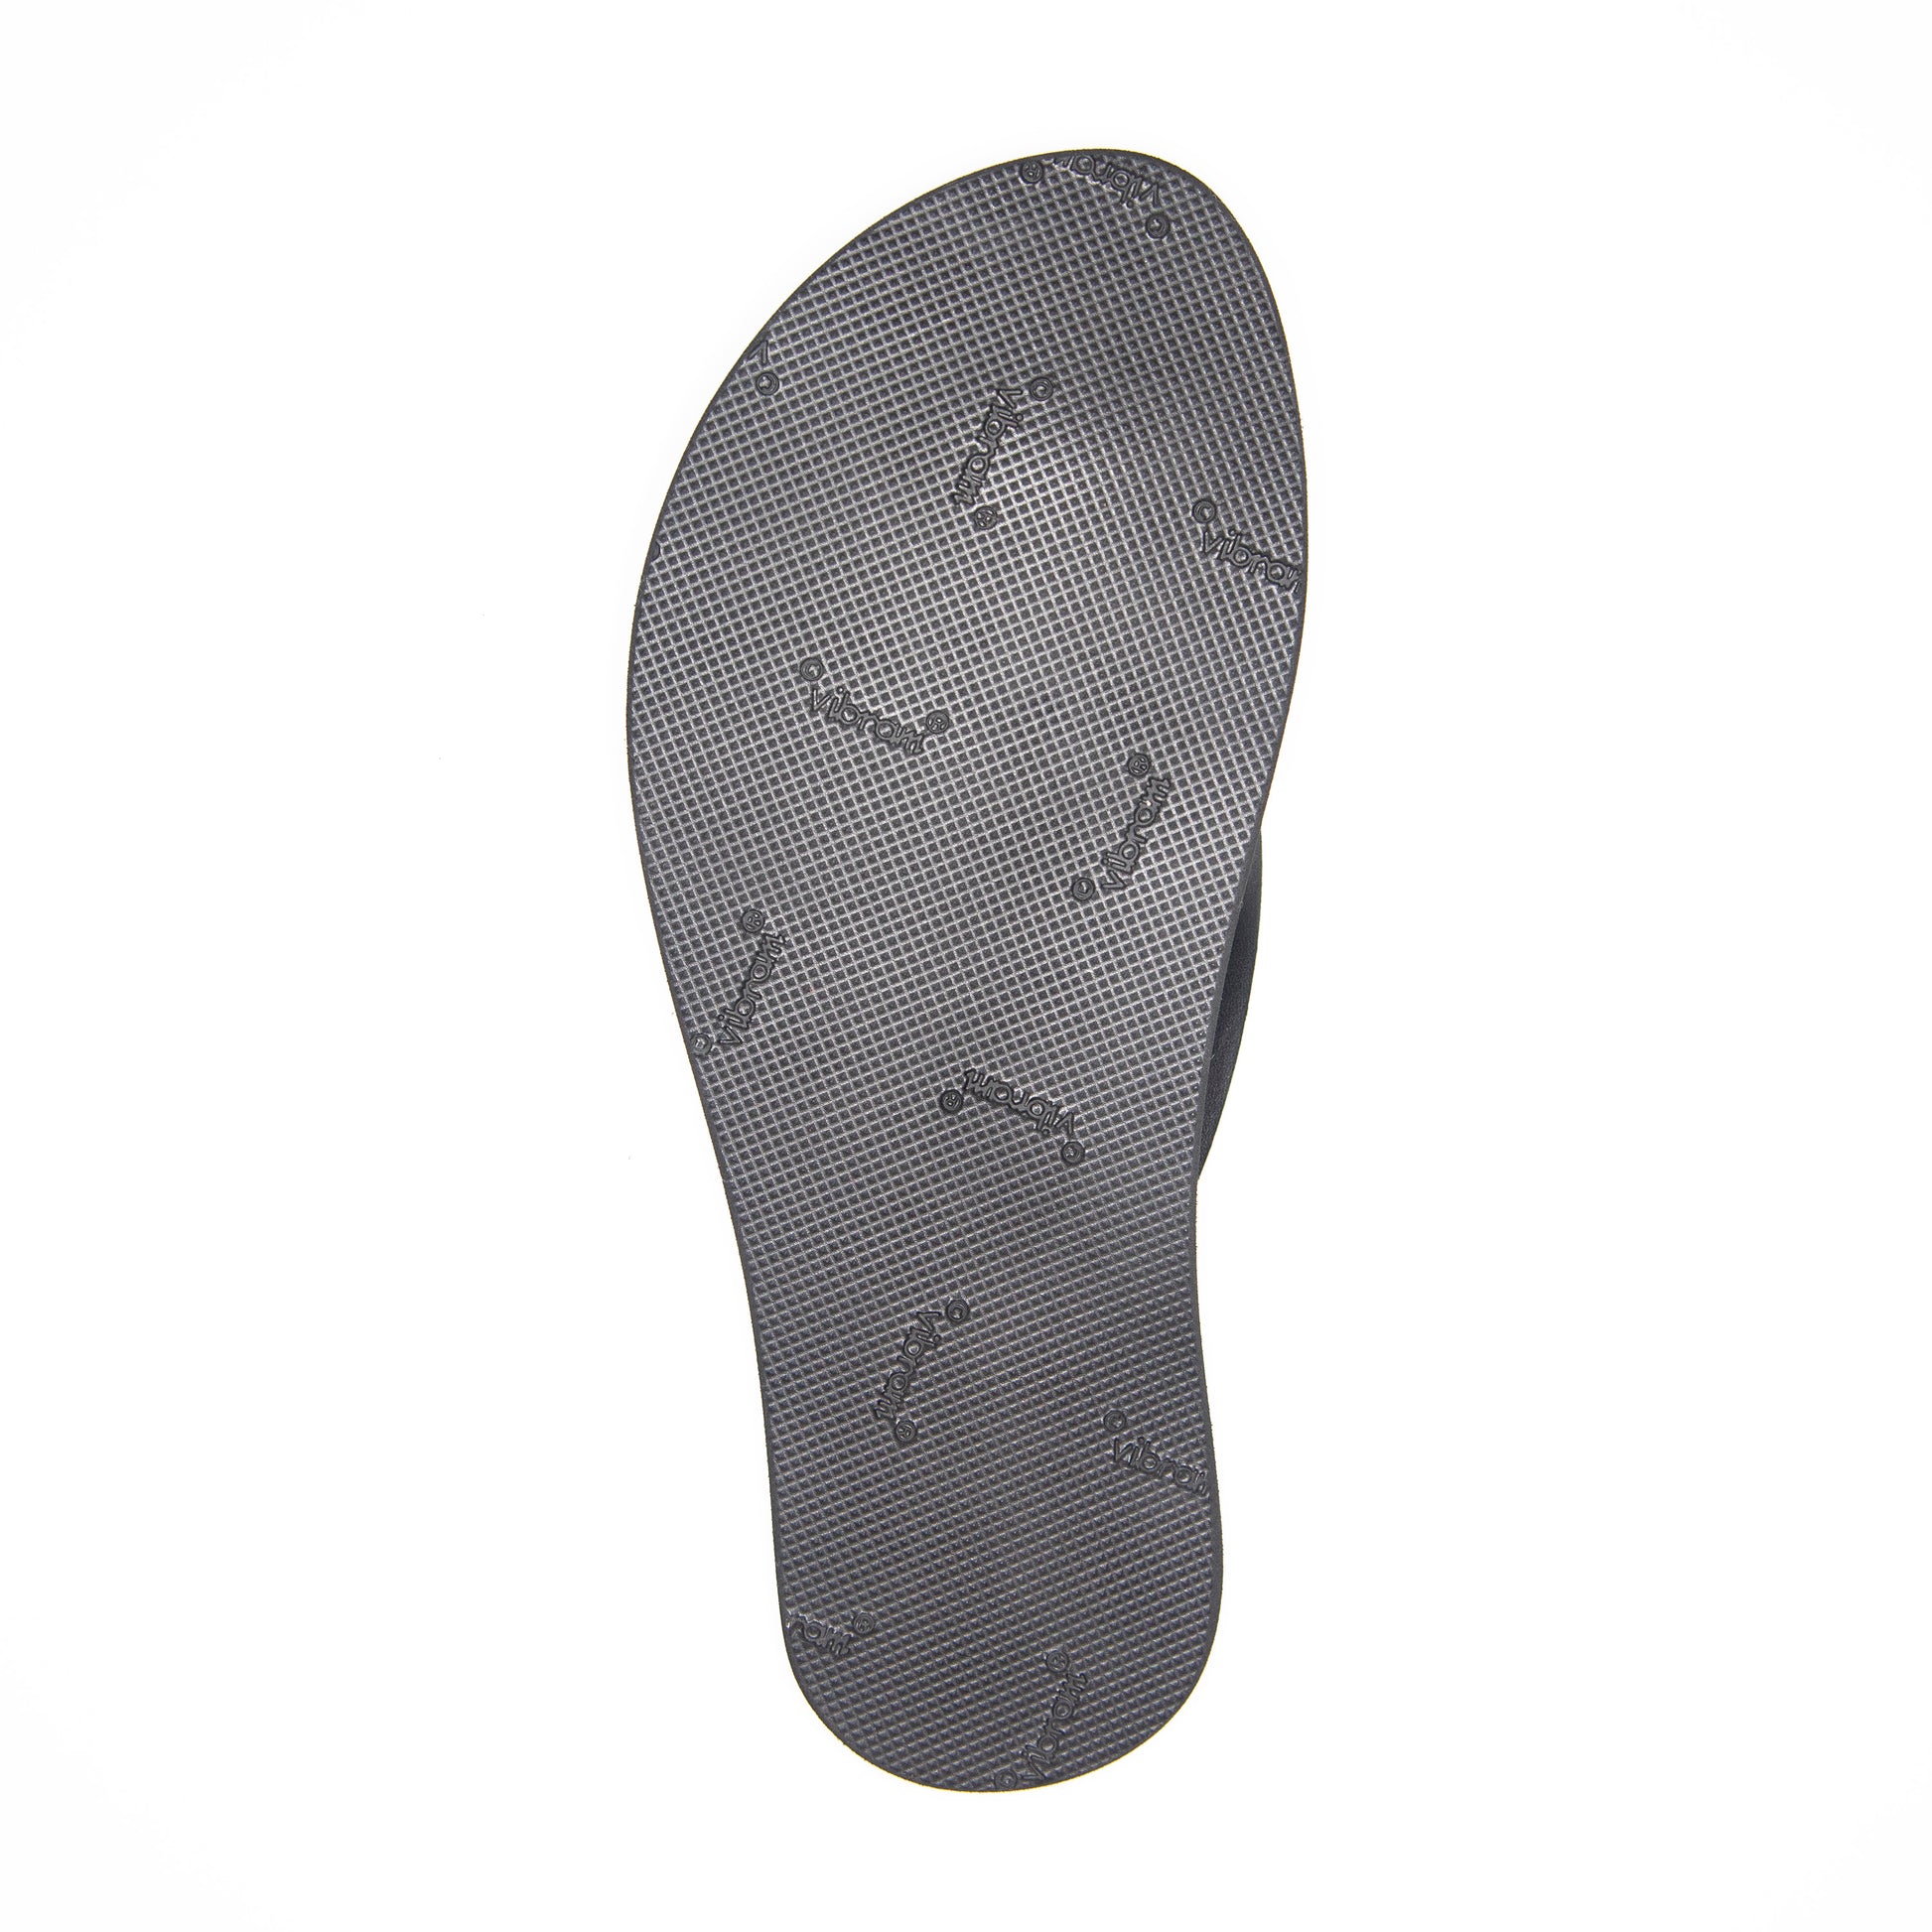 Sole upgrade – Kiwi Sandals